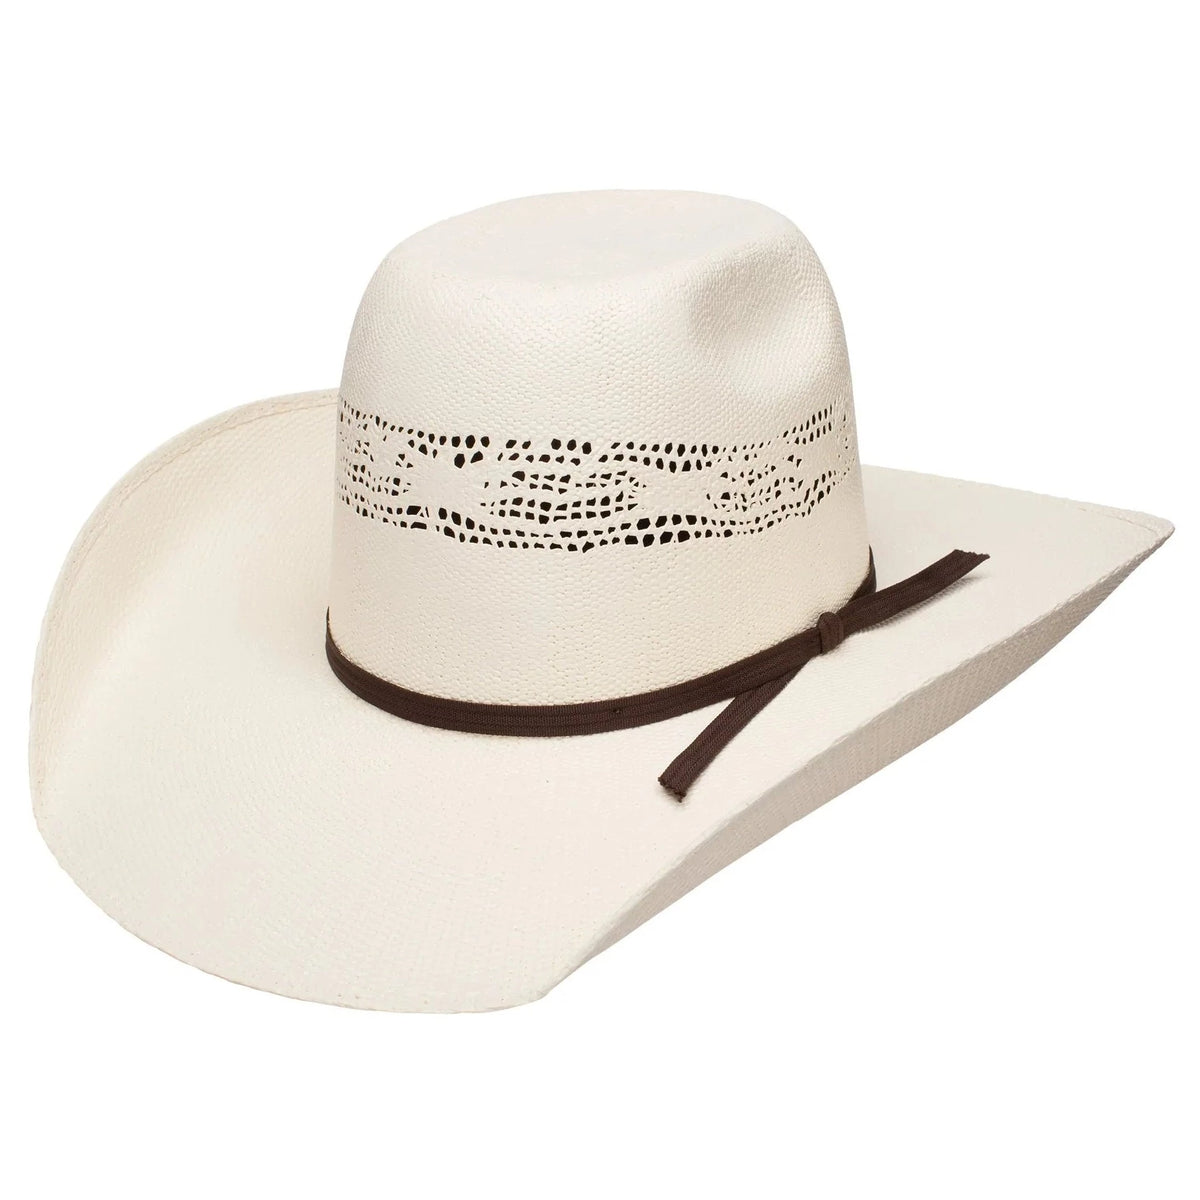 Resistol Super Duty Straw Cowboy Hat